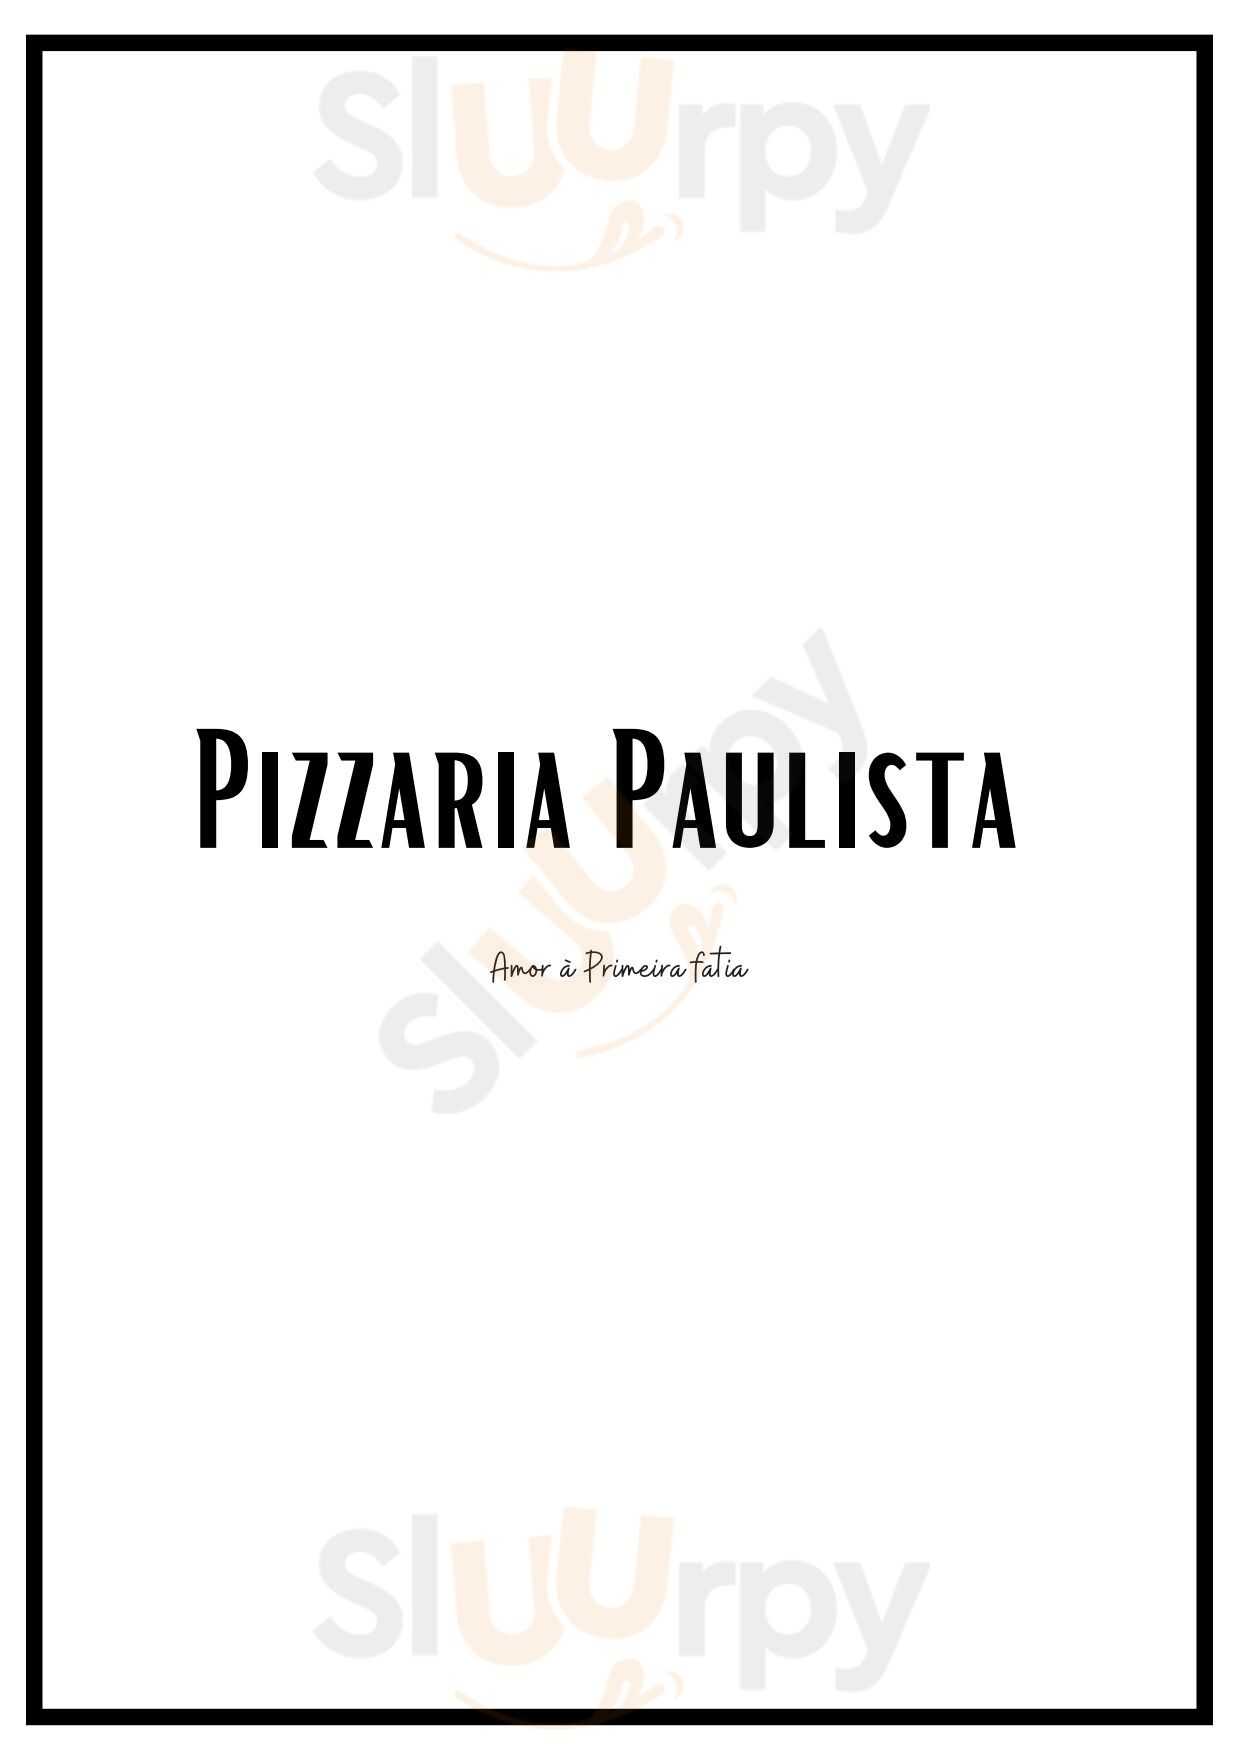 Pizzaria Paulista Vila Nova de Gaia Menu - 1